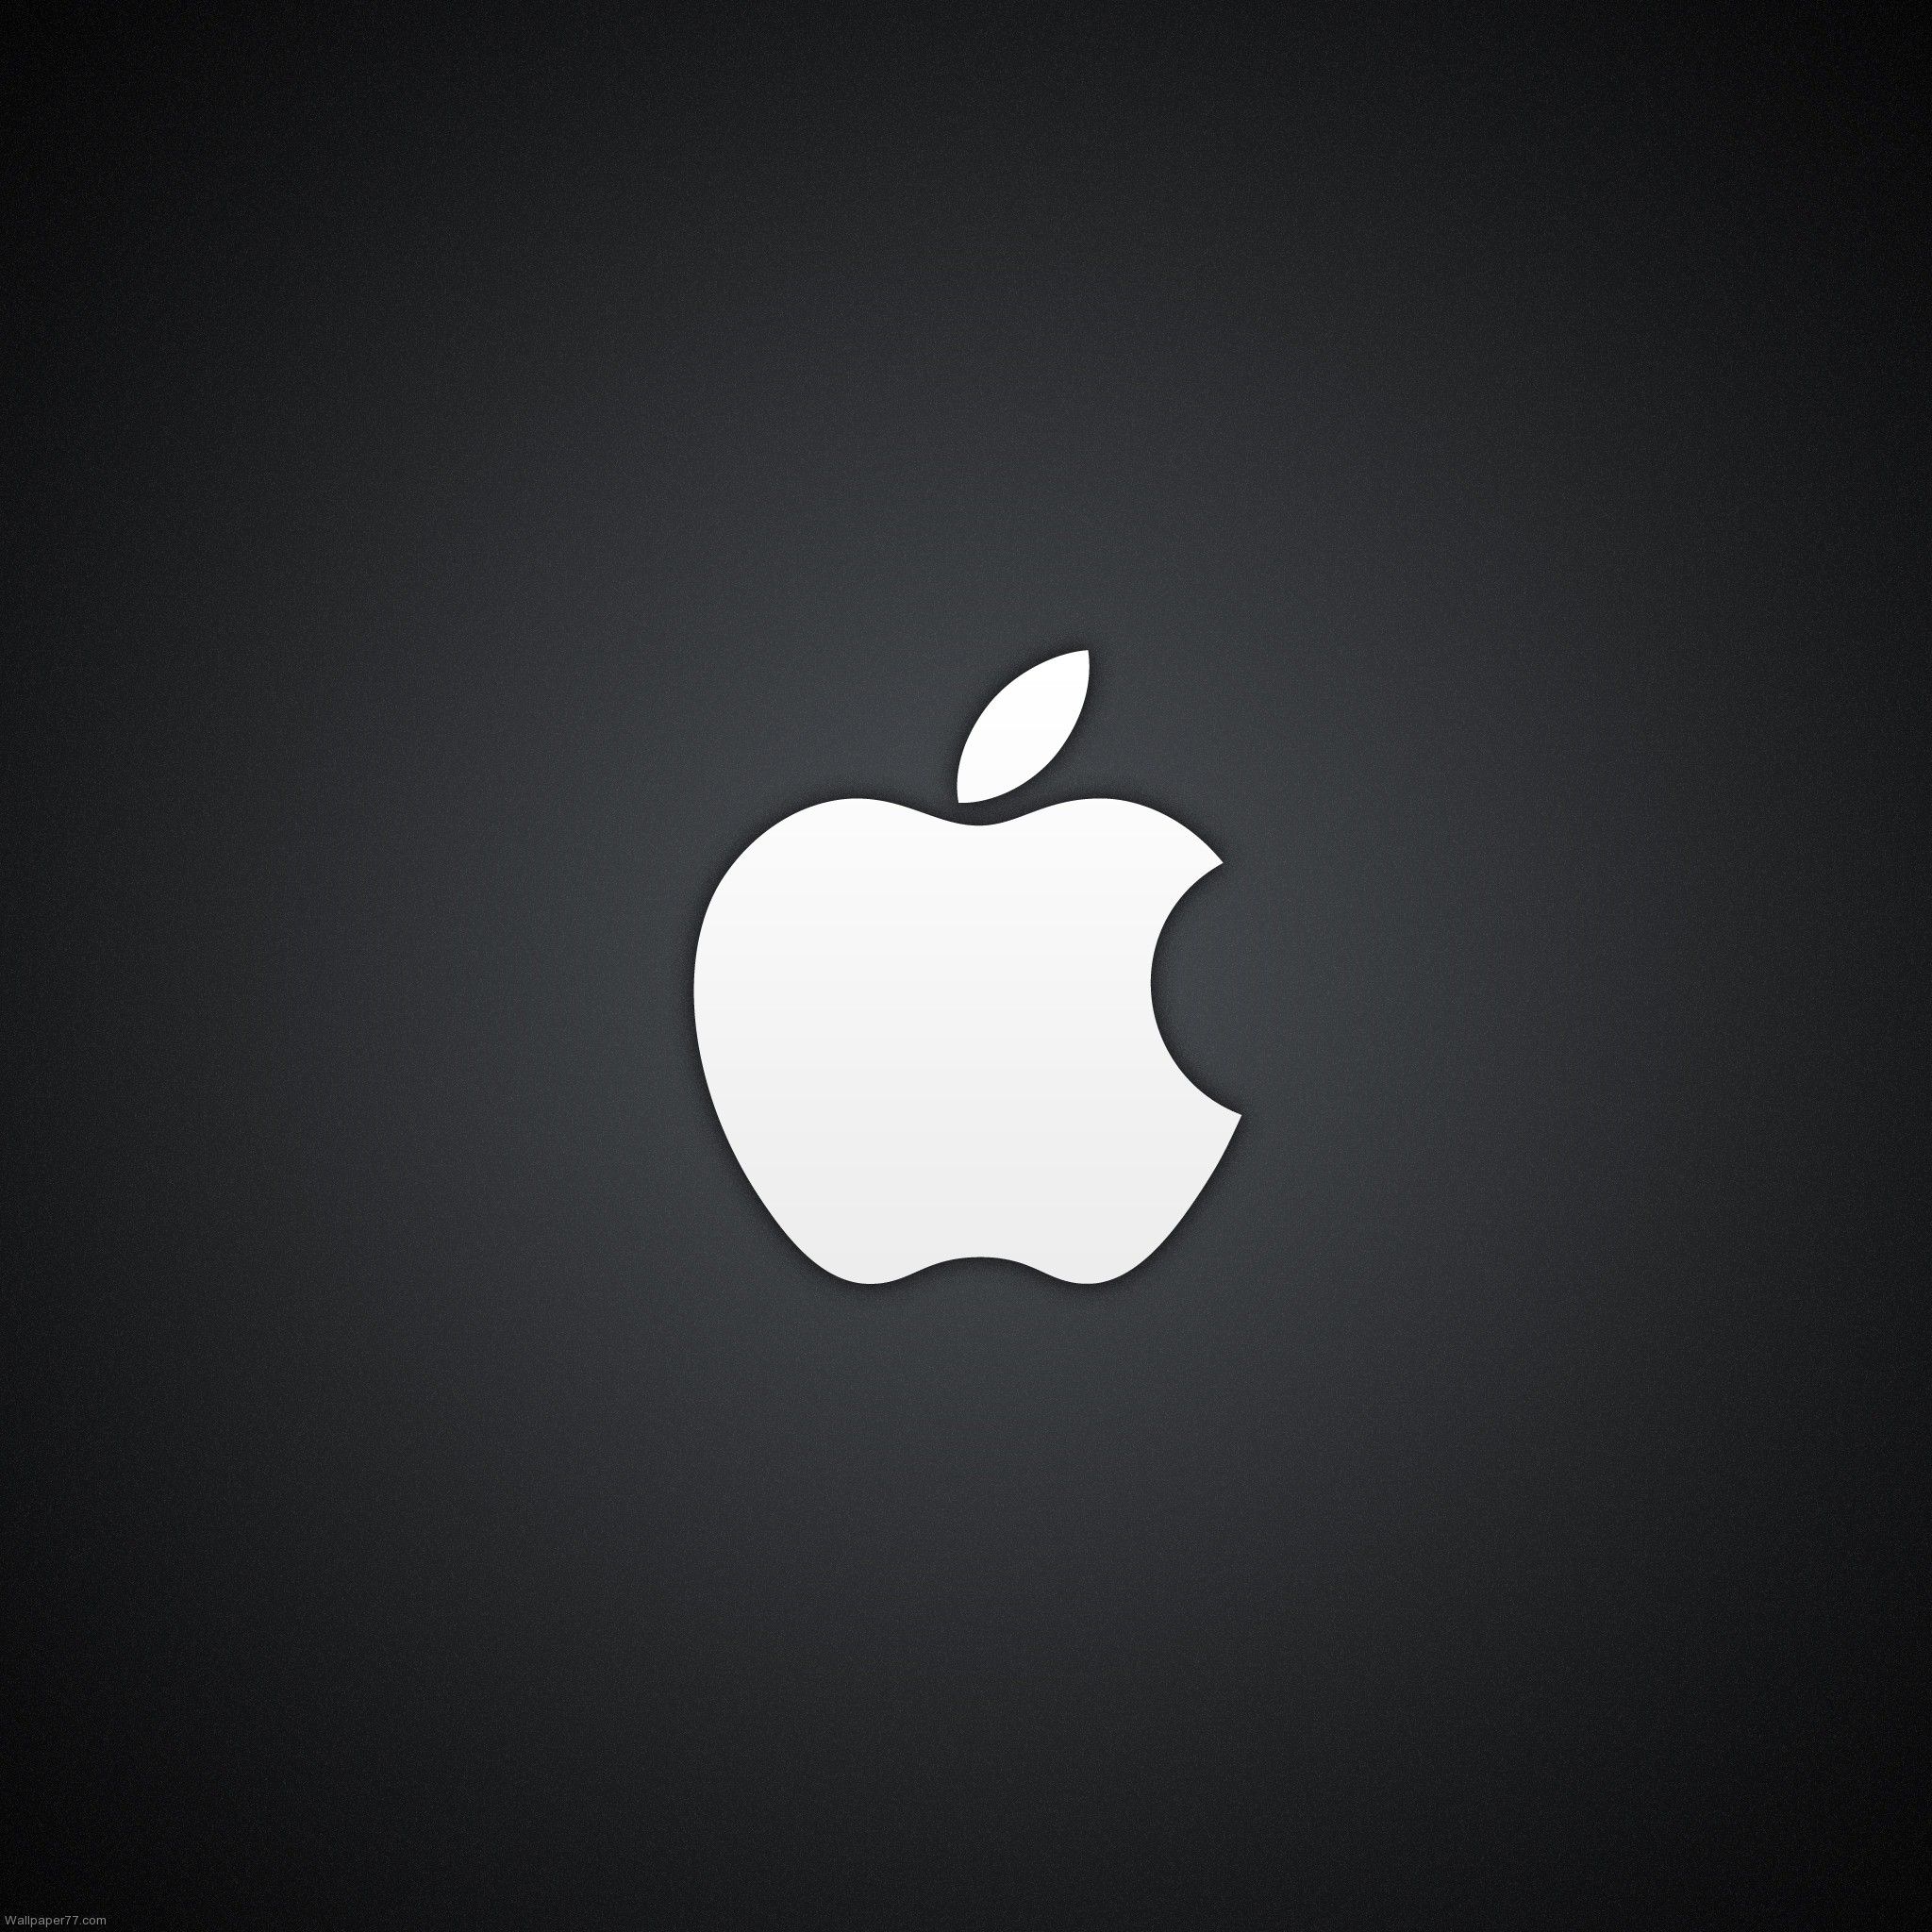 Big Apple Logo, 2048x2048 pixels : Wallpapers tagged iPad 3 ...